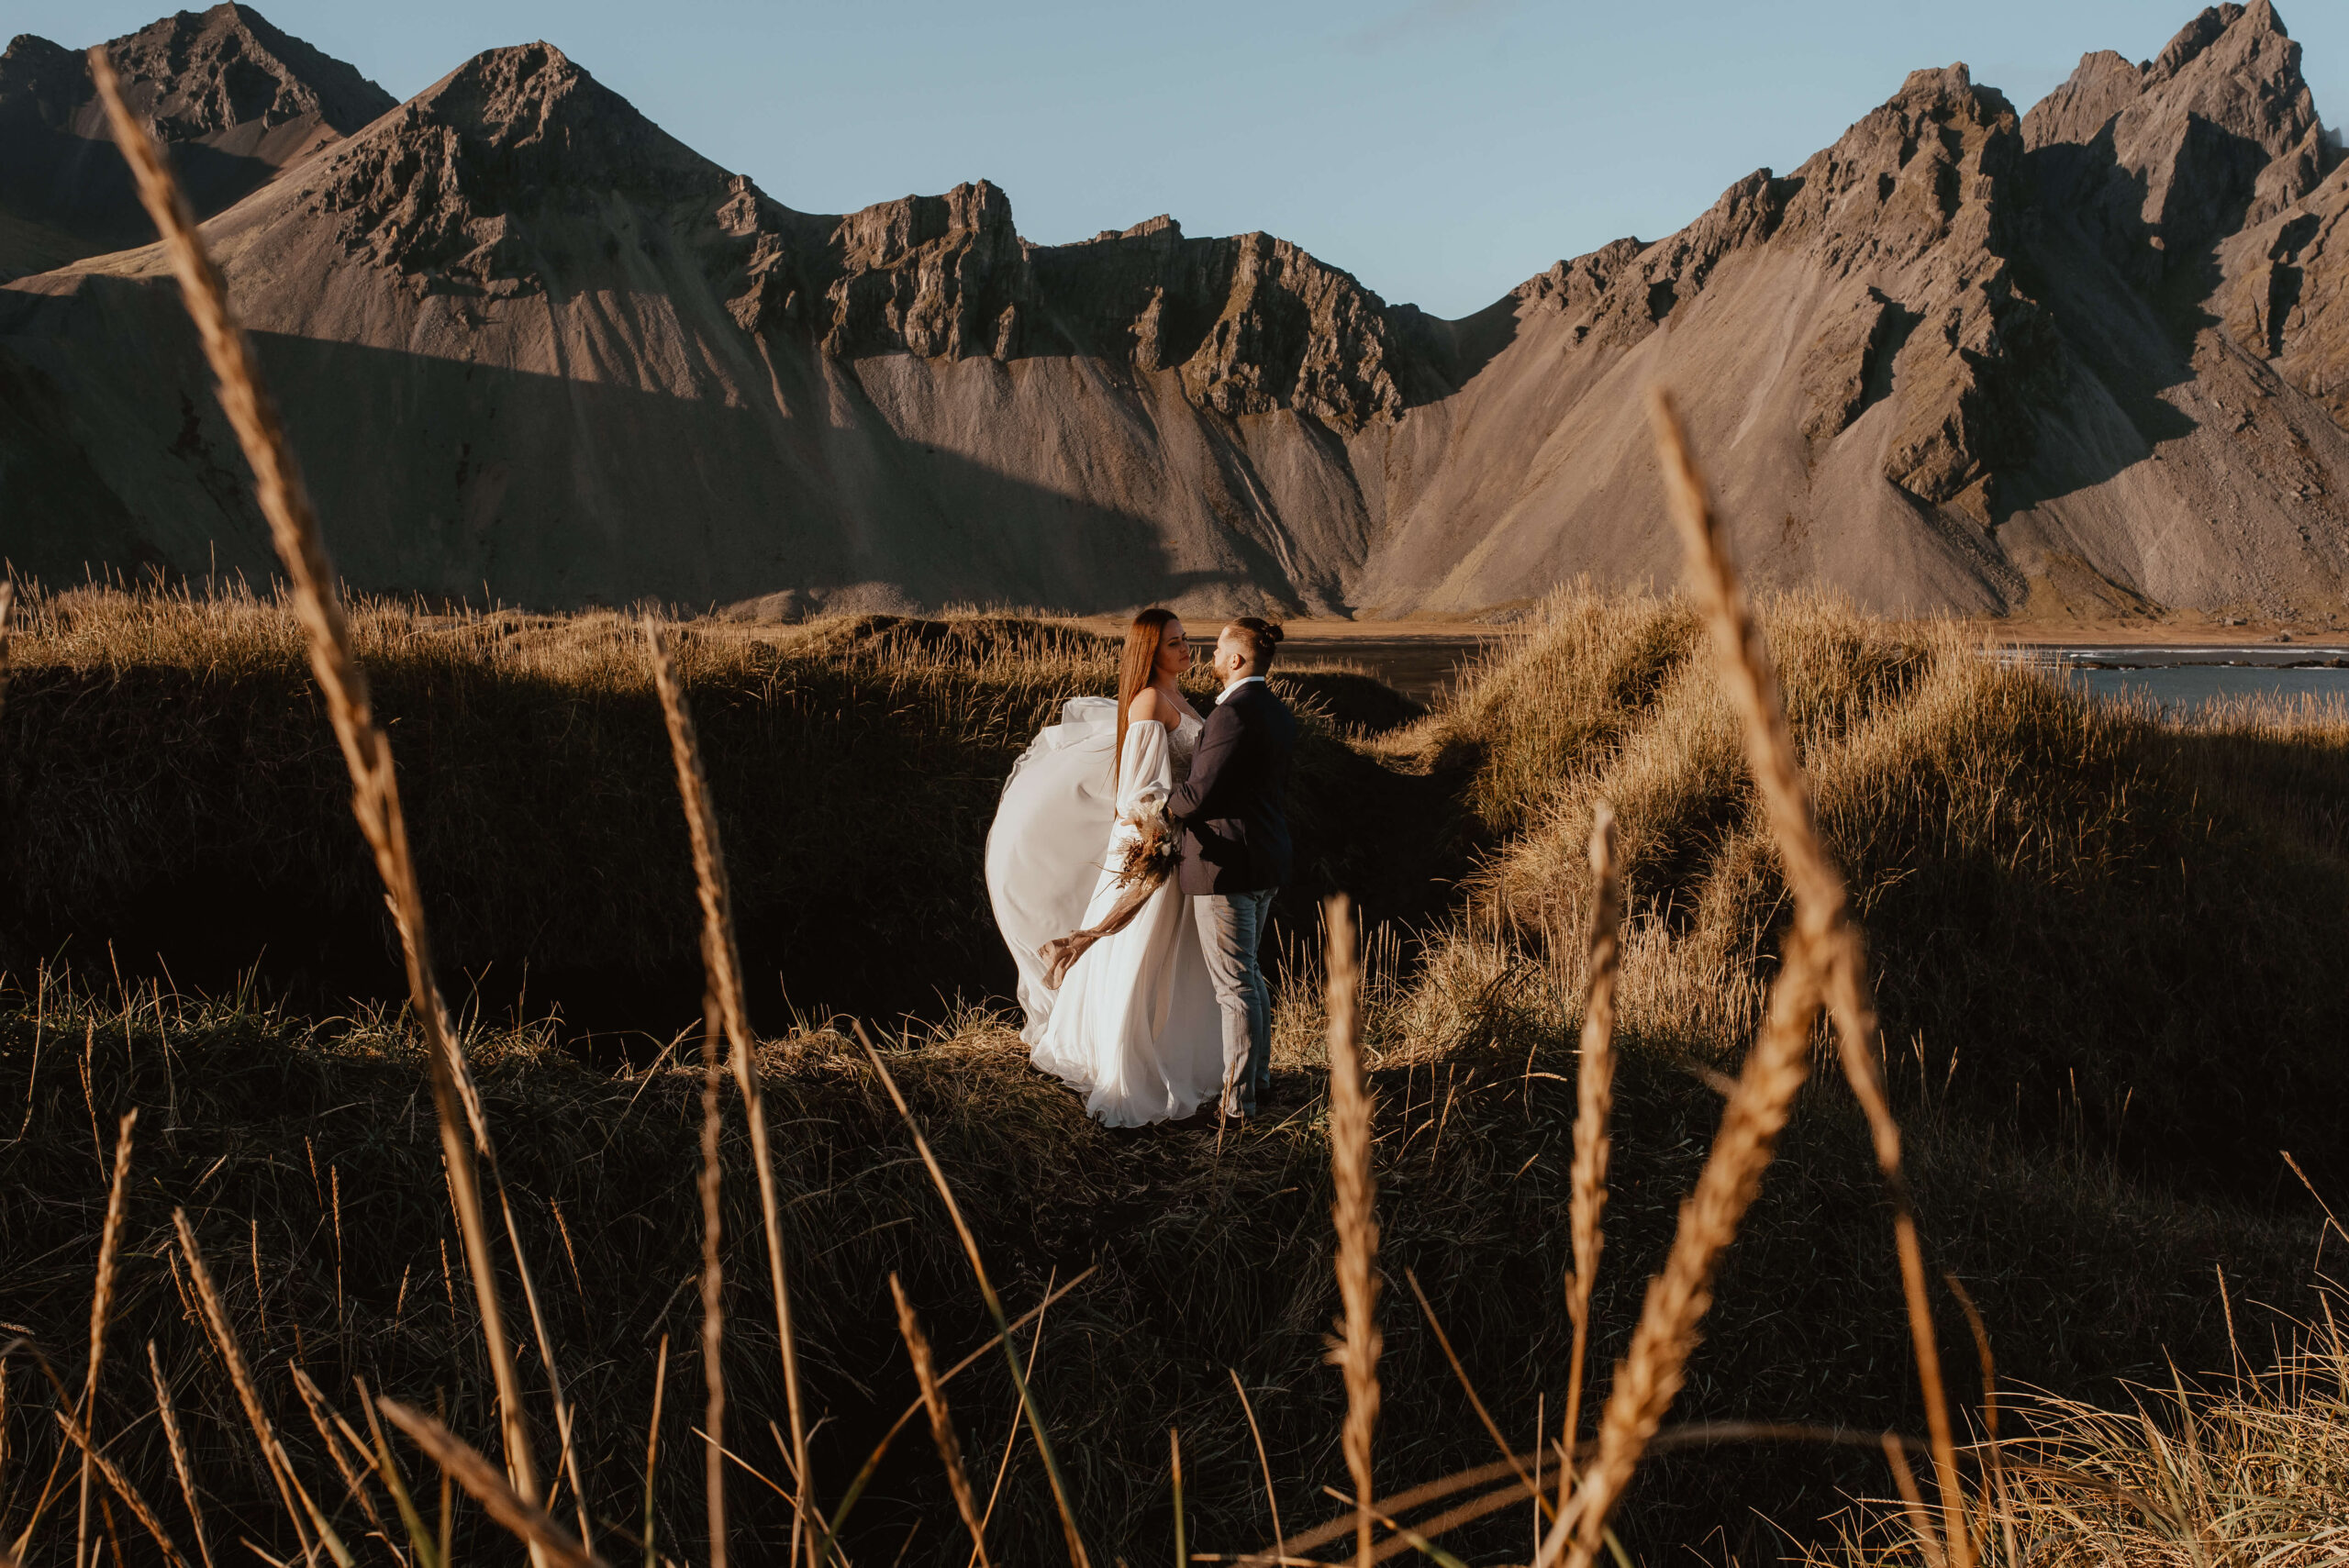 Die Fotos zeigen ein junges Paar in Hochzeitskleidung auf Island, an einem warmen Tag, im Hintergrund sieht man riesige Berge und das Meer. Das Paar schaut sich in die Augen, umarmt sich und lacht, während man im Hintergrund das Rauschen der Wellen hören kann. Diese Bilder sind der perfekte Beweis für die Schönheit und den Zauber einer Hochzeit im Ausland. Schlüsselwort: Auslandshochzeit. Katarzyna Nord fotografie